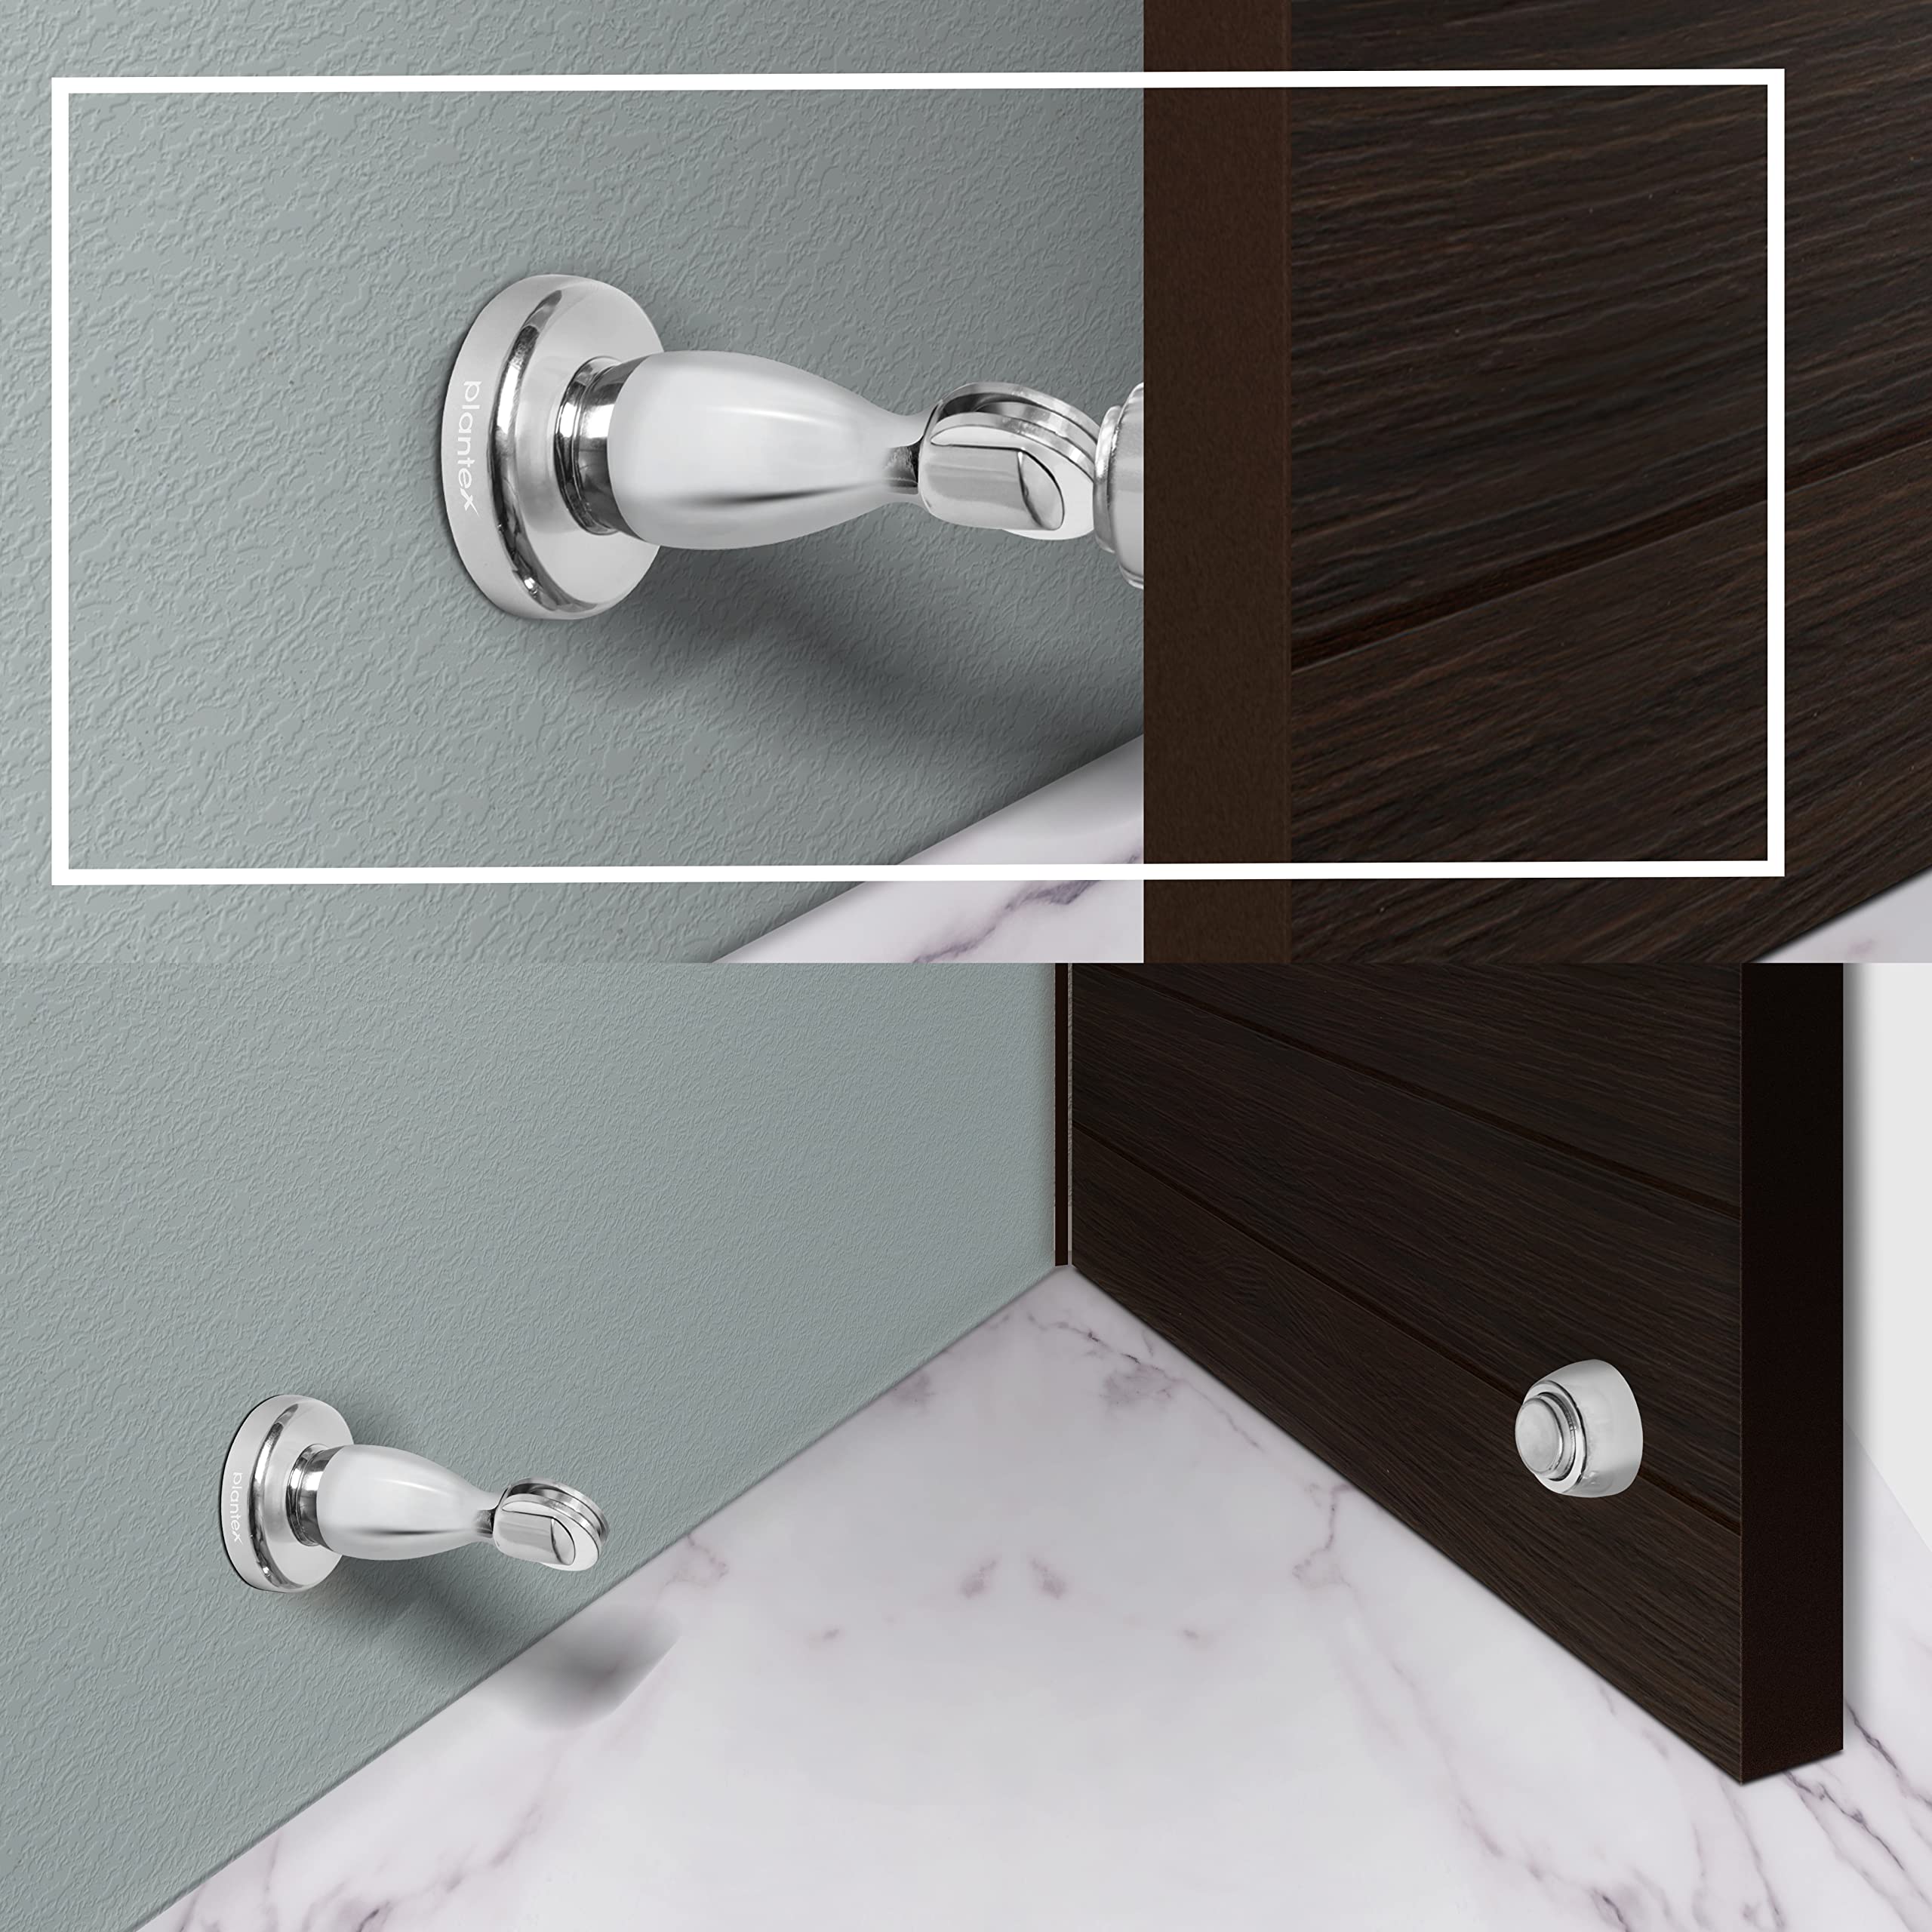 Plantex Magnetic Door Stopper for Home/ 360 Degree Magnet Door Catcher/Door Holder for Main Door/Bedroom/Office and Hotel Door - Pack of 6 (4 inch, Chrome)